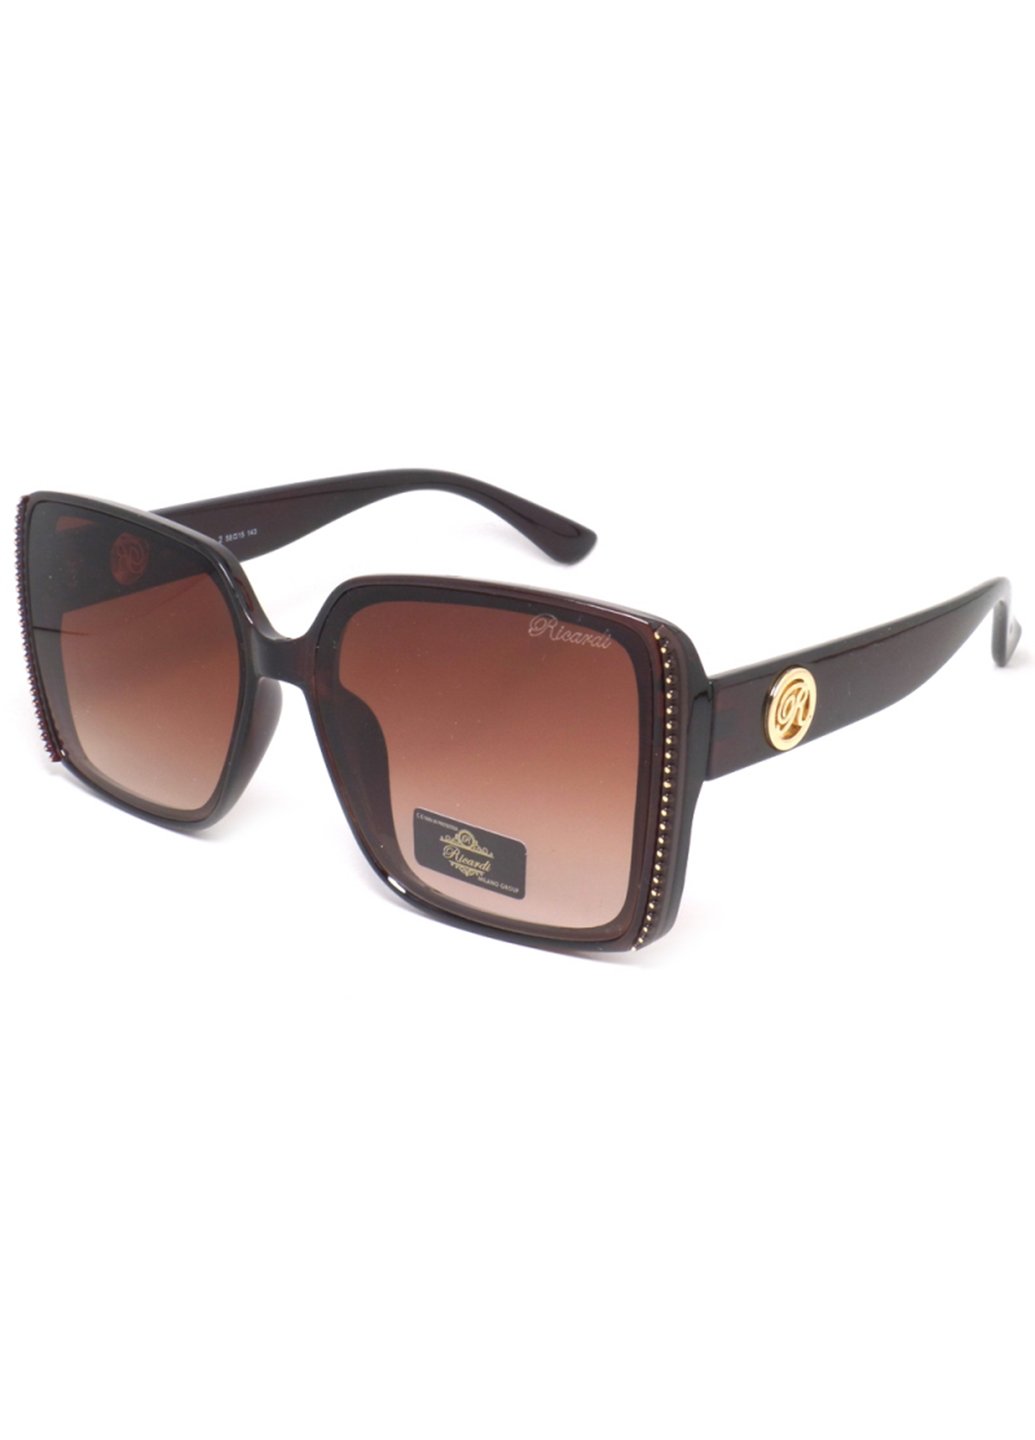 Купить Женские солнцезащитные очки Ricardi RC0139 110005 - Коричневый в интернет-магазине